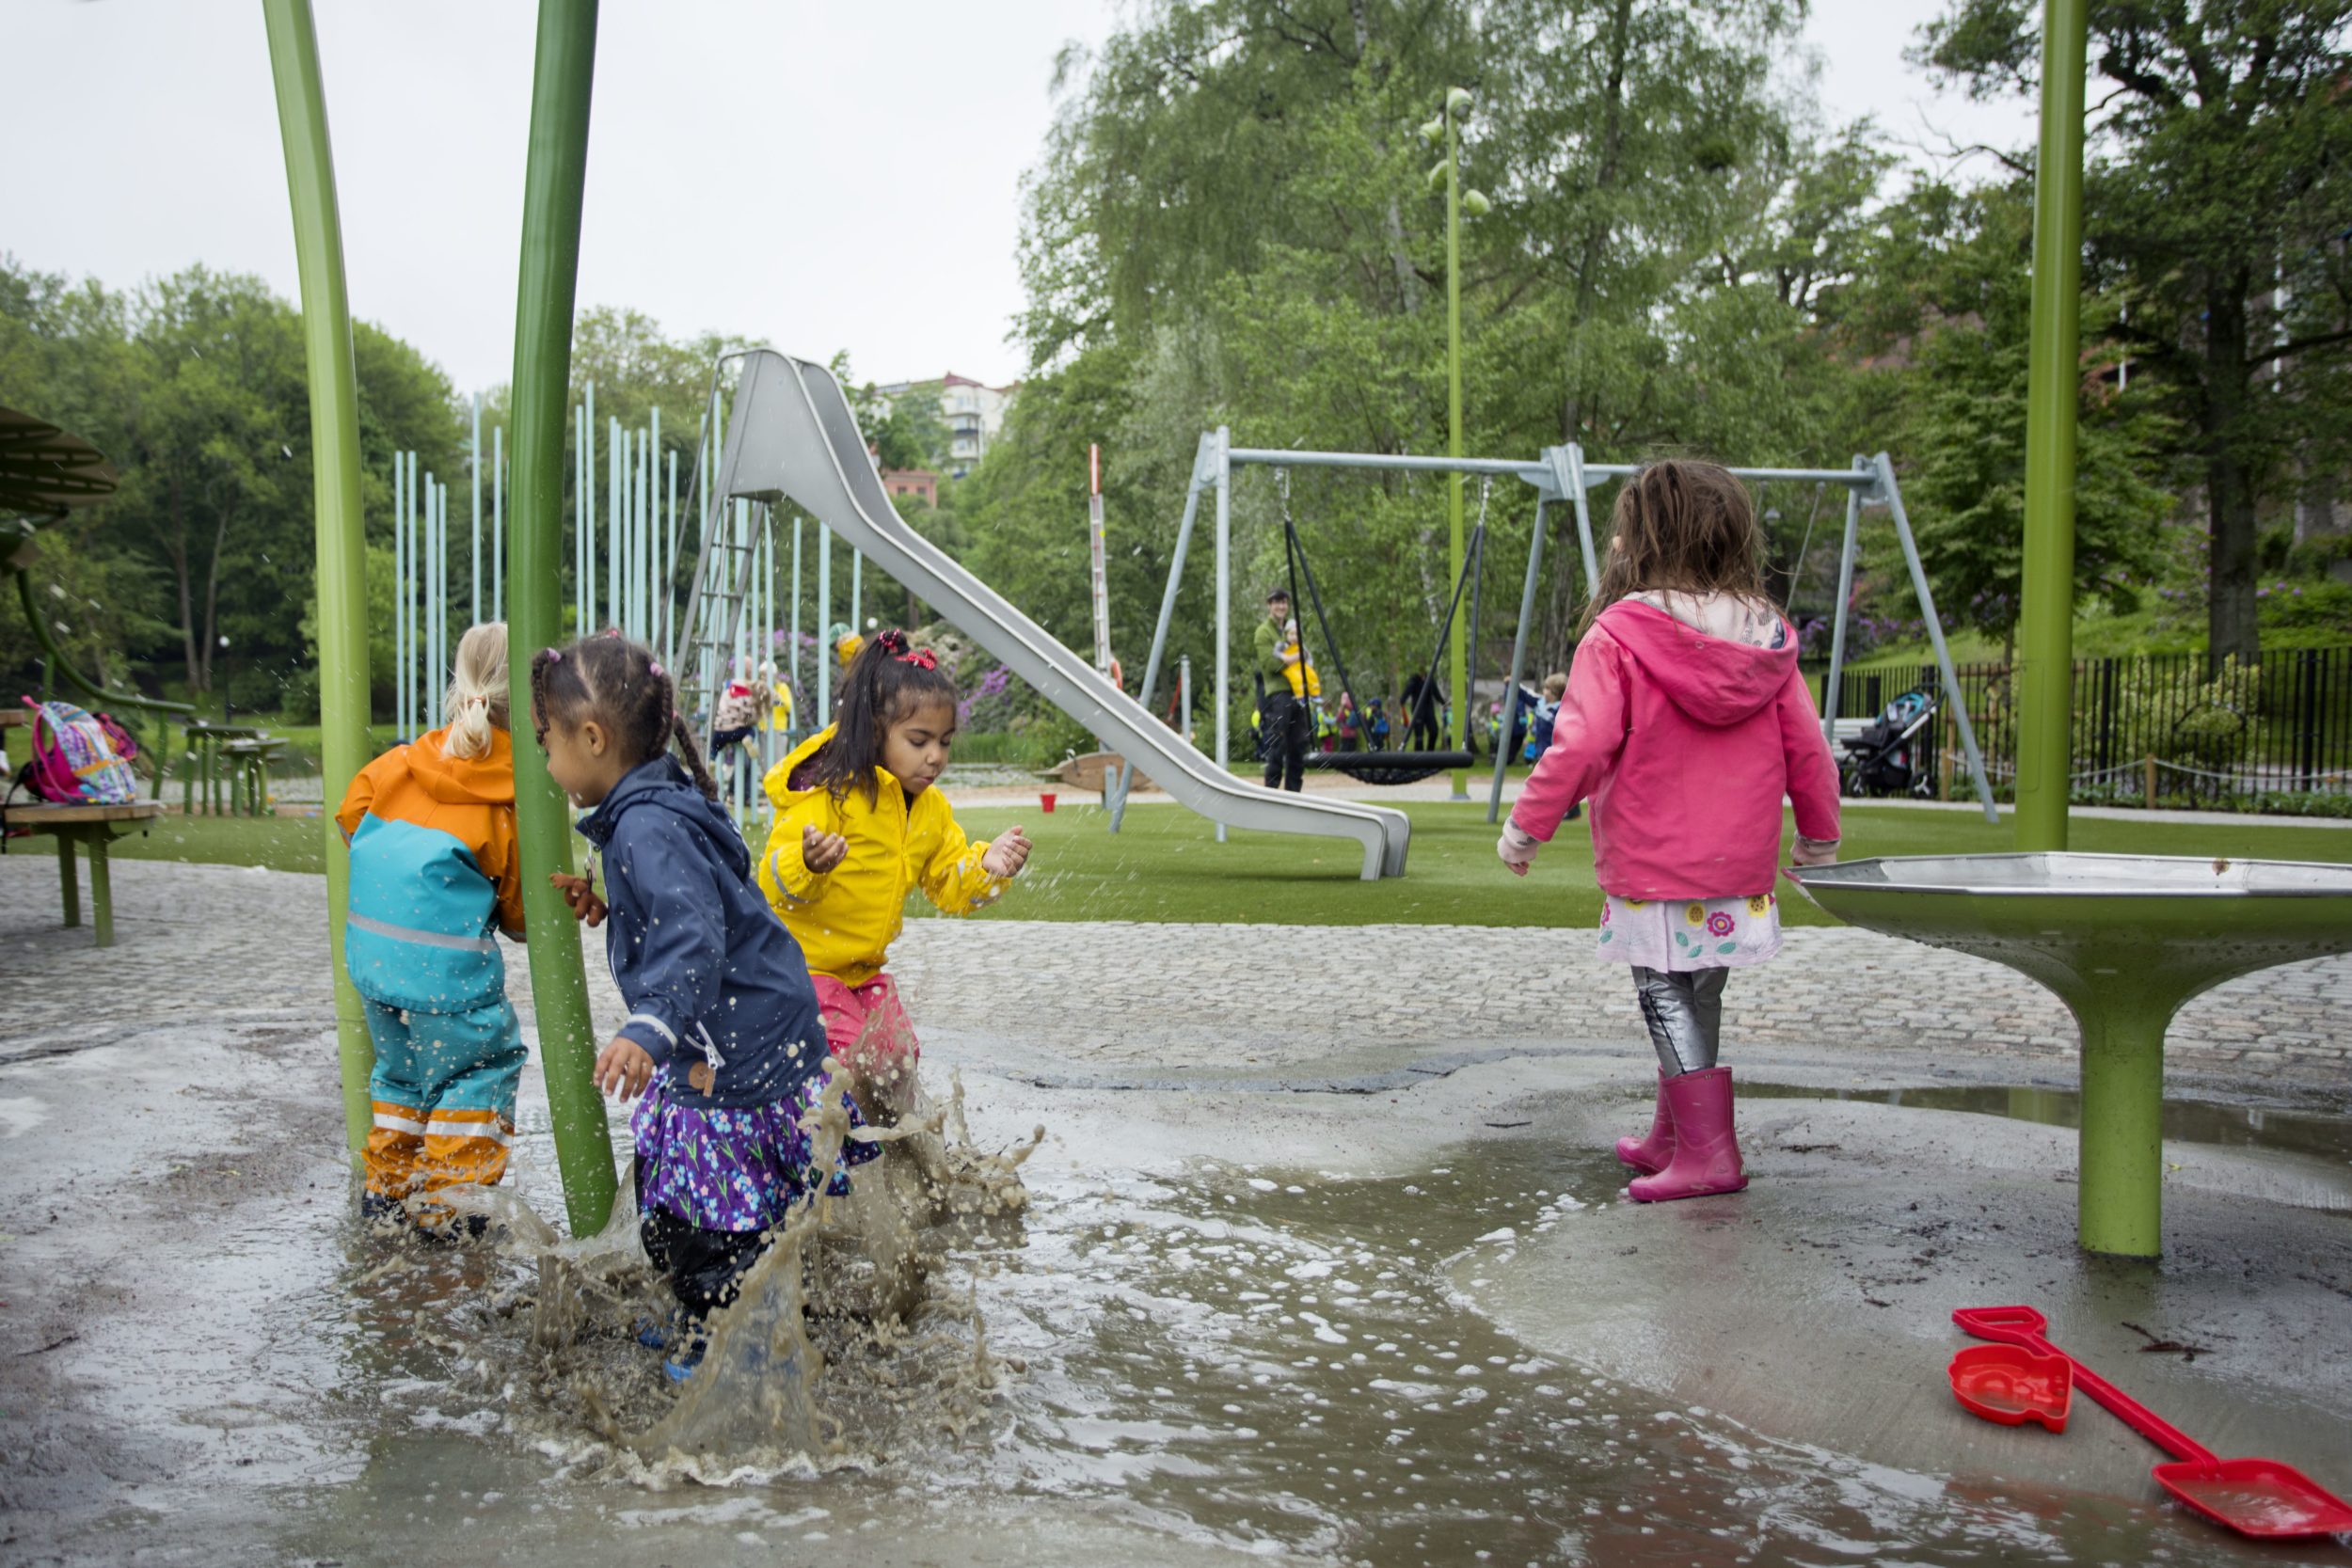 The rain playground in the park Renströmsparken.